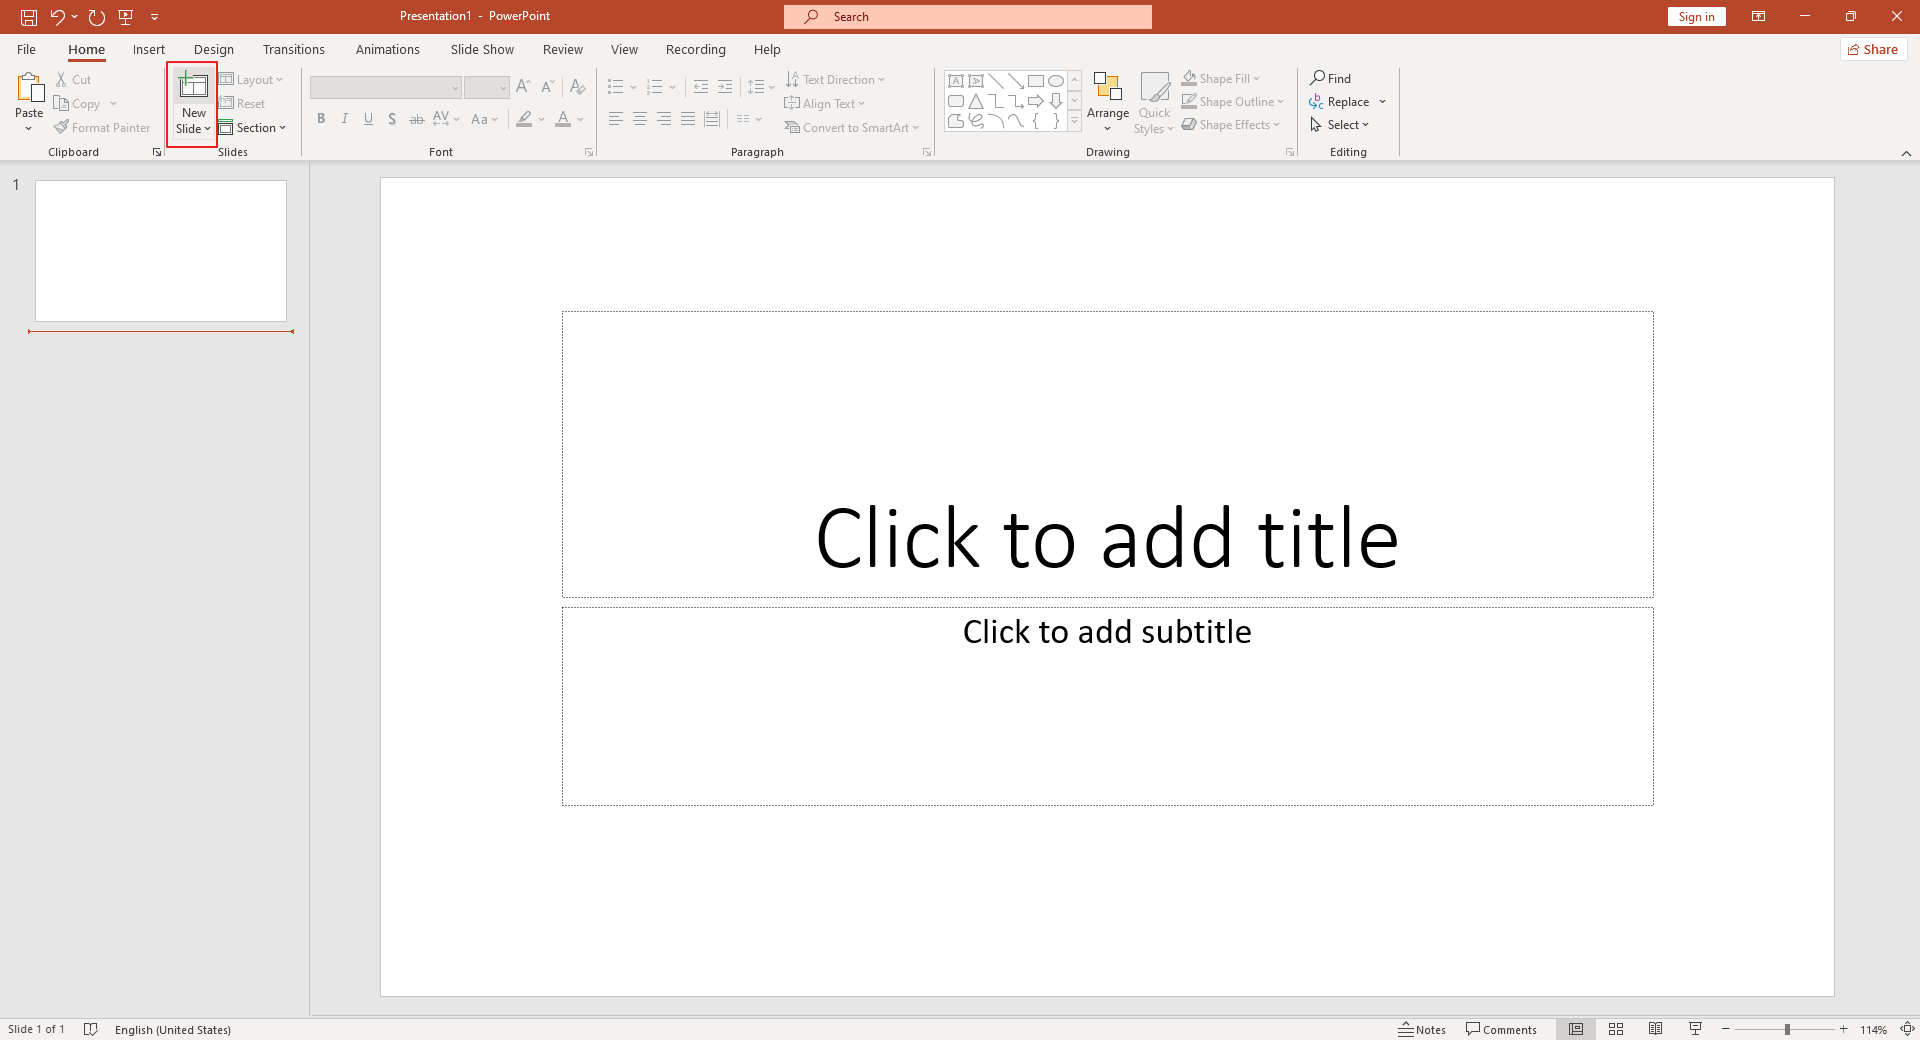 Create a new slide